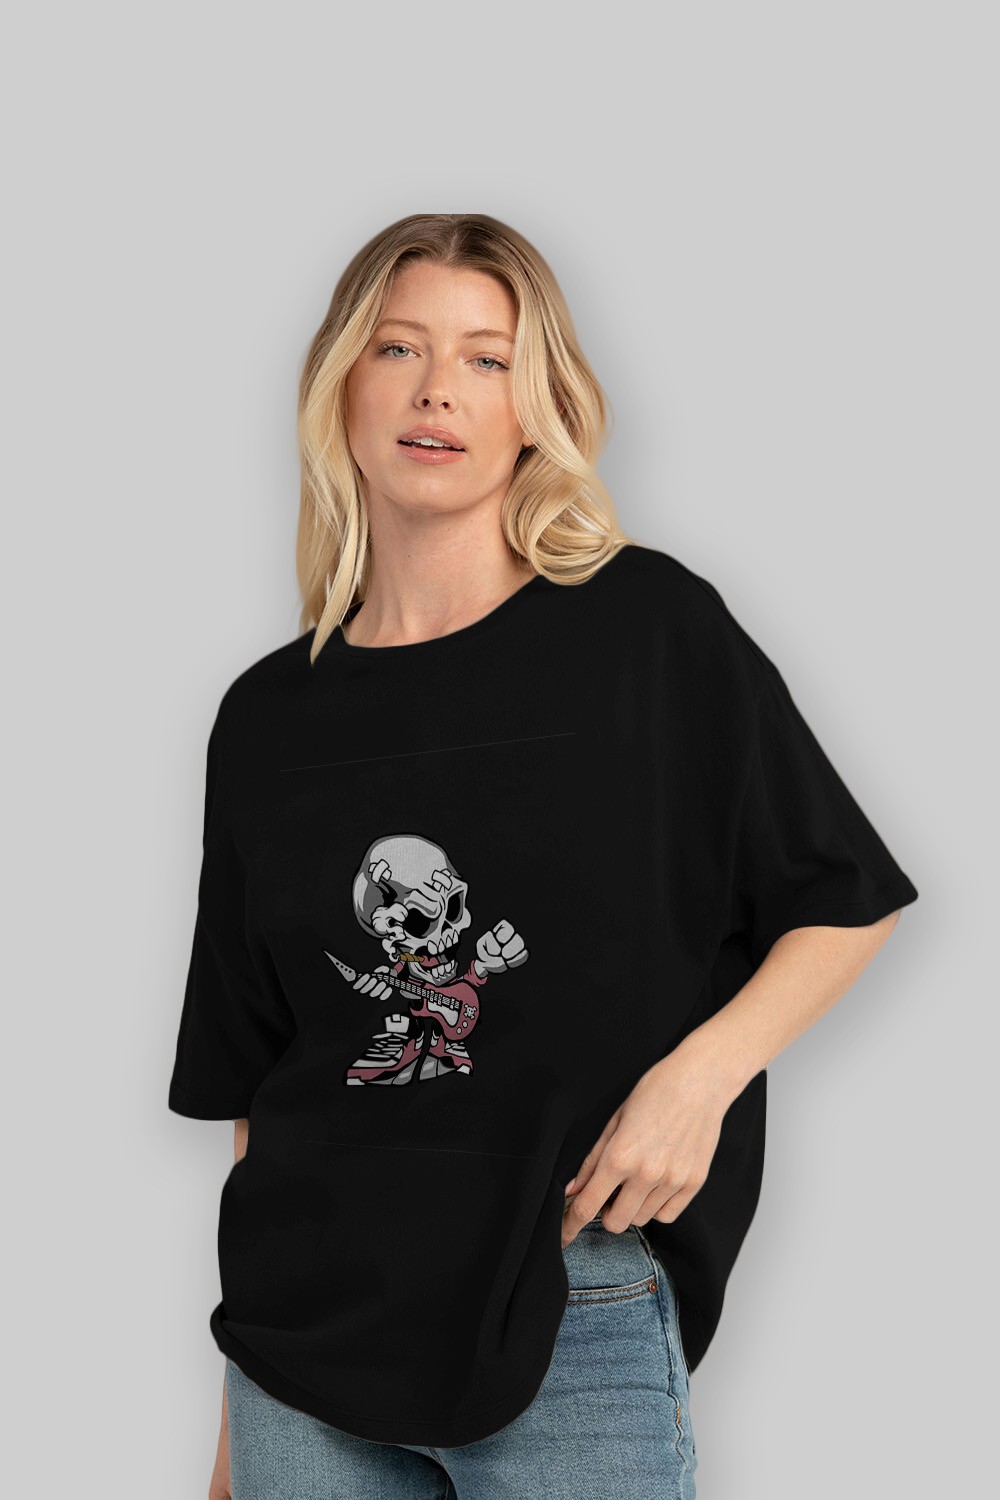 Skull Rockstar Ön Baskılı Oversize t-shirt Erkek Kadın Unisex %100 Pamuk tişort